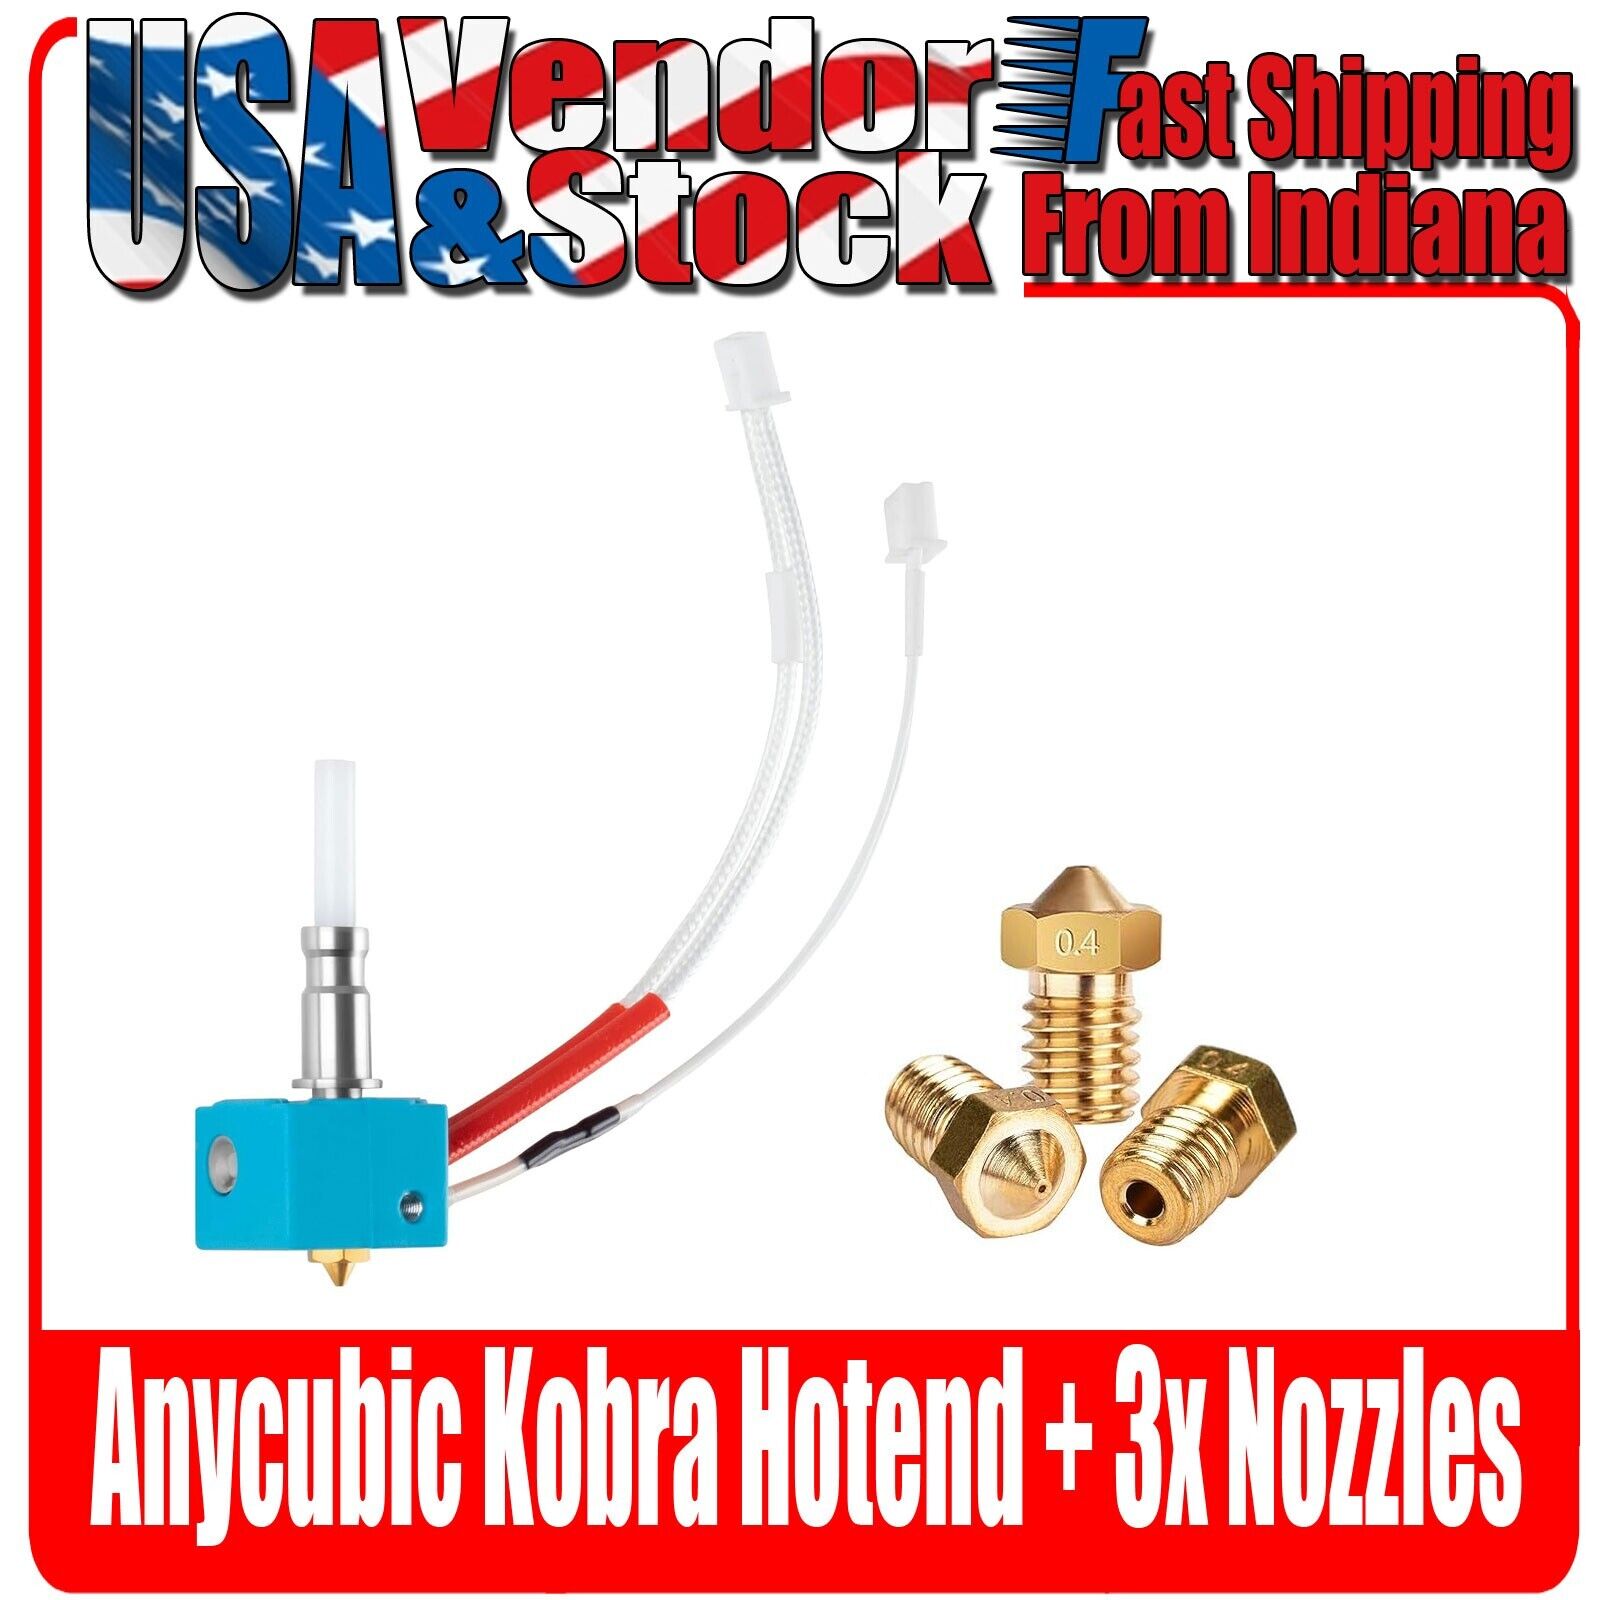 Kobra Hotend for AnyCubic Kobra 3D Printer, Kobra Hotend w/3x Nozzles